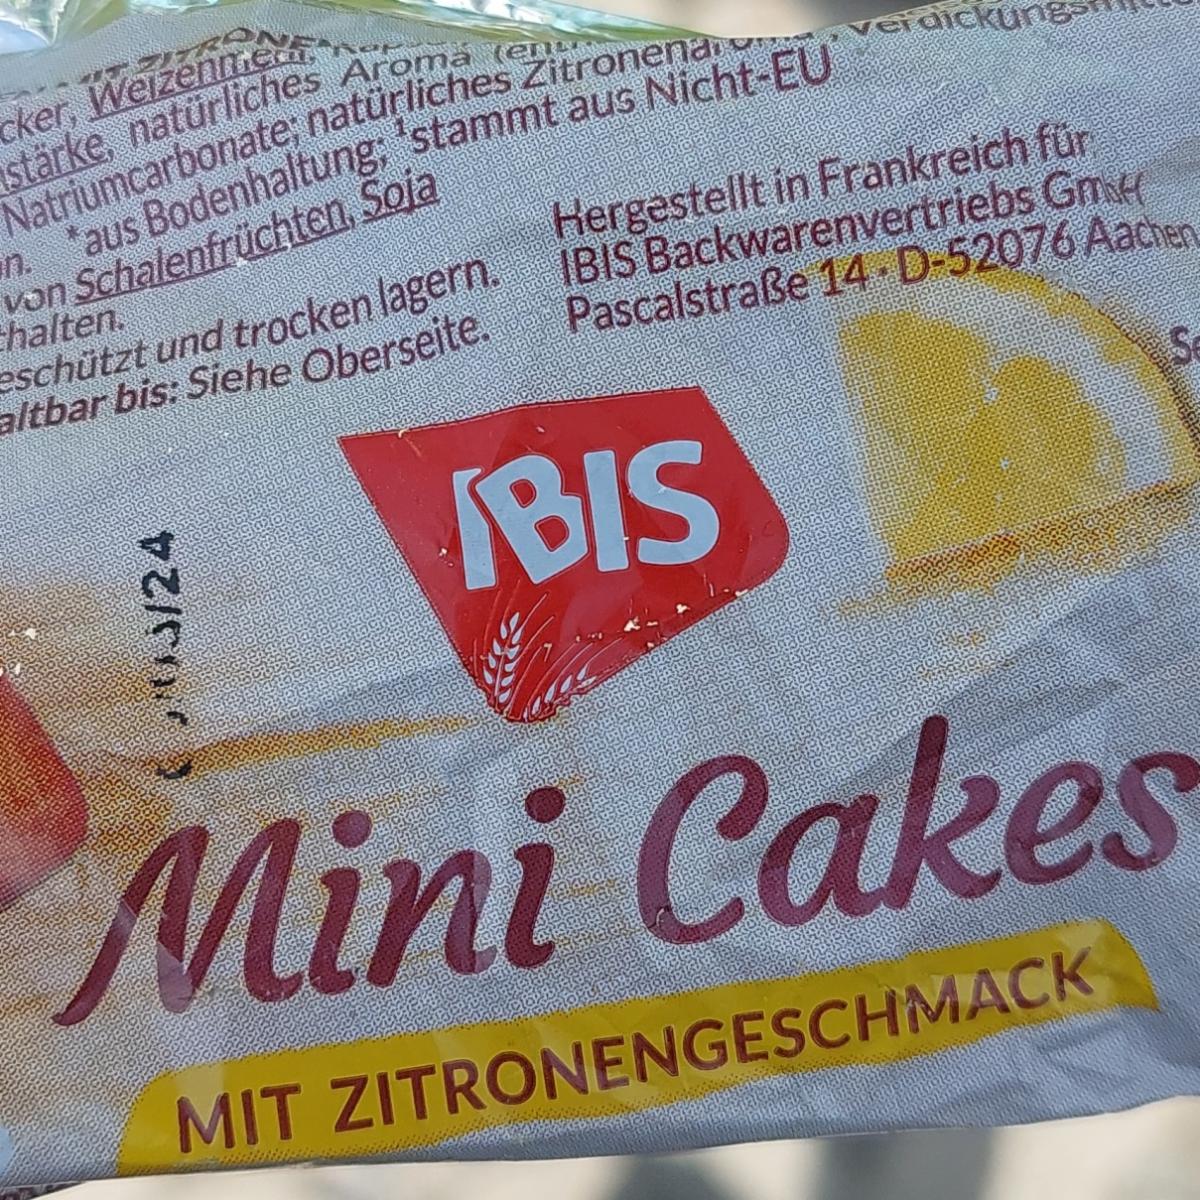 Фото - Бисквит с соком лимона mini cakes Ibis